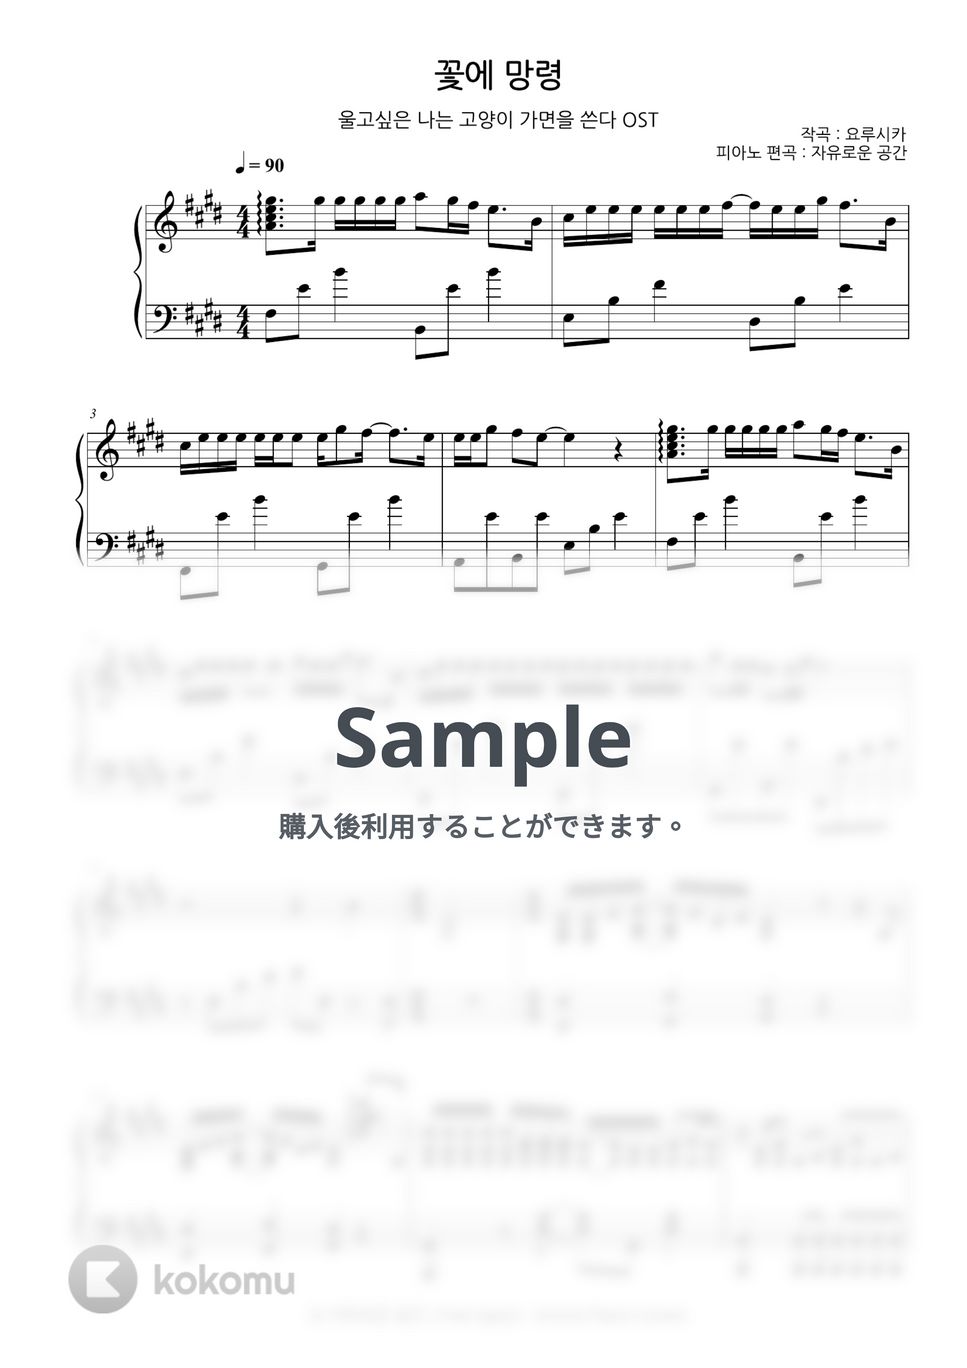 ヨルシカ - 花に亡霊 (泣きたい私は猫をかぶる OST) by Free Space / Anime Piano Covers